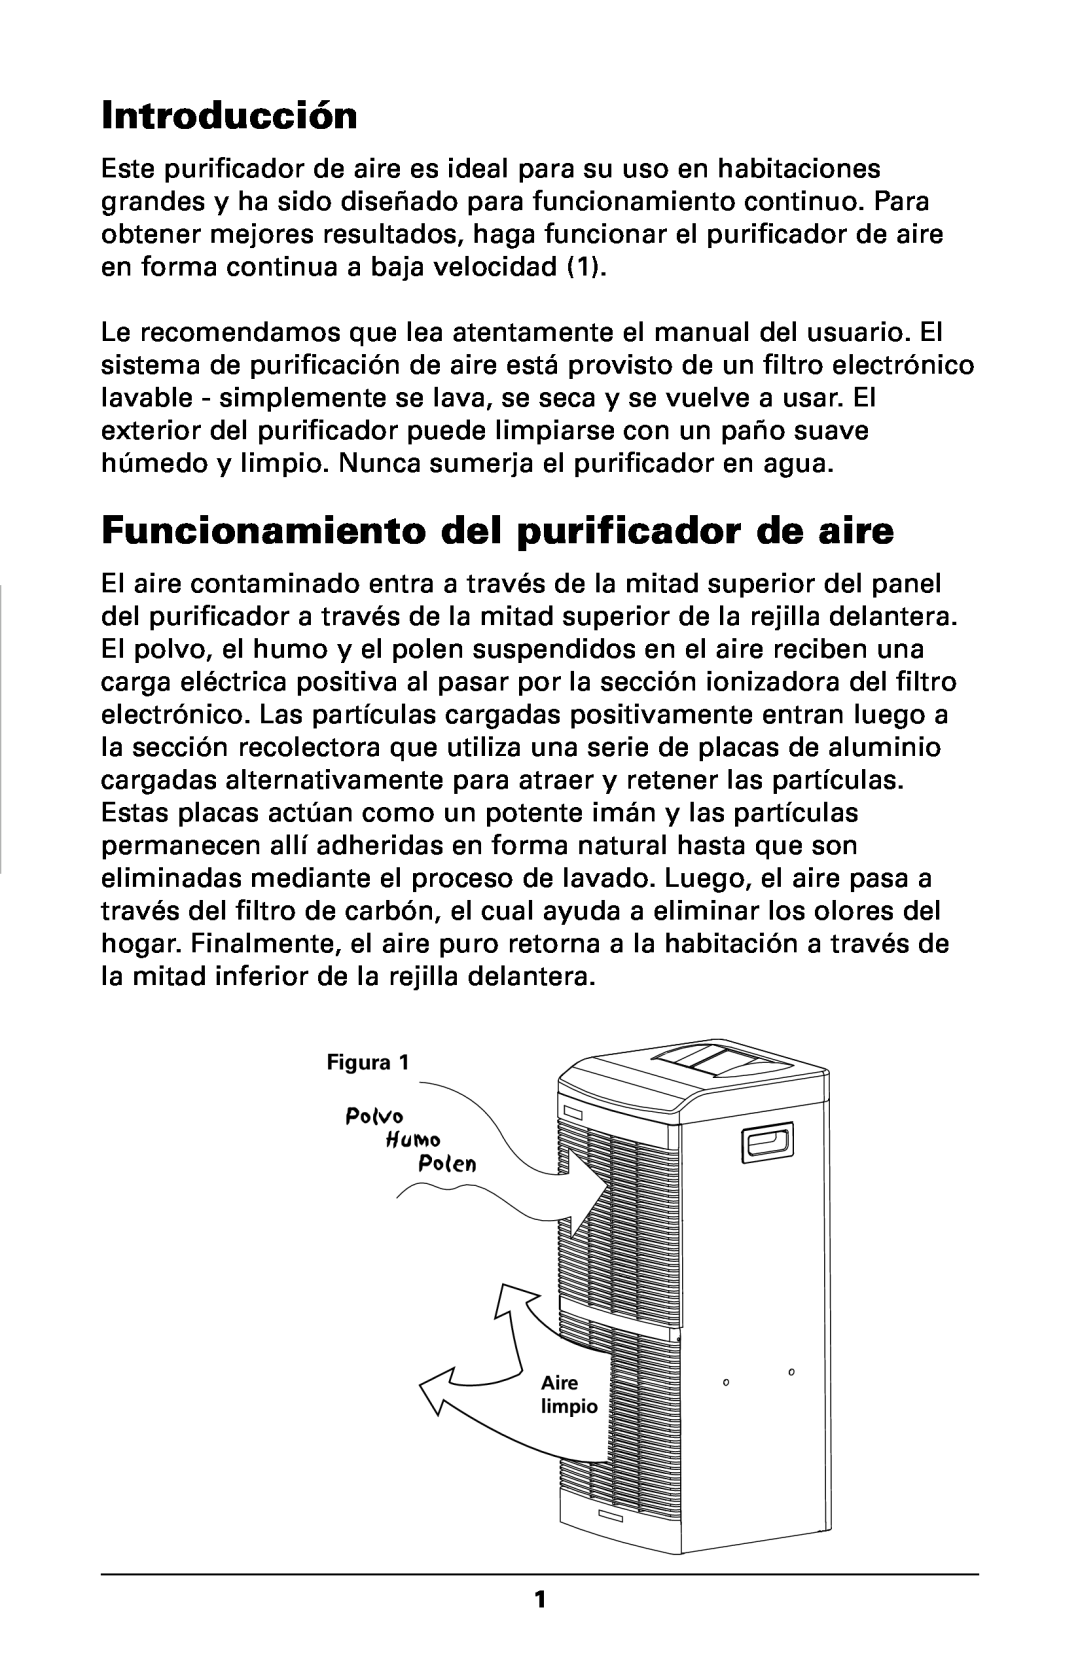 Trion High Efficiency Console Electronic Air Purifier manual Introducción, Funcionamiento del purificador de aire, Figura 